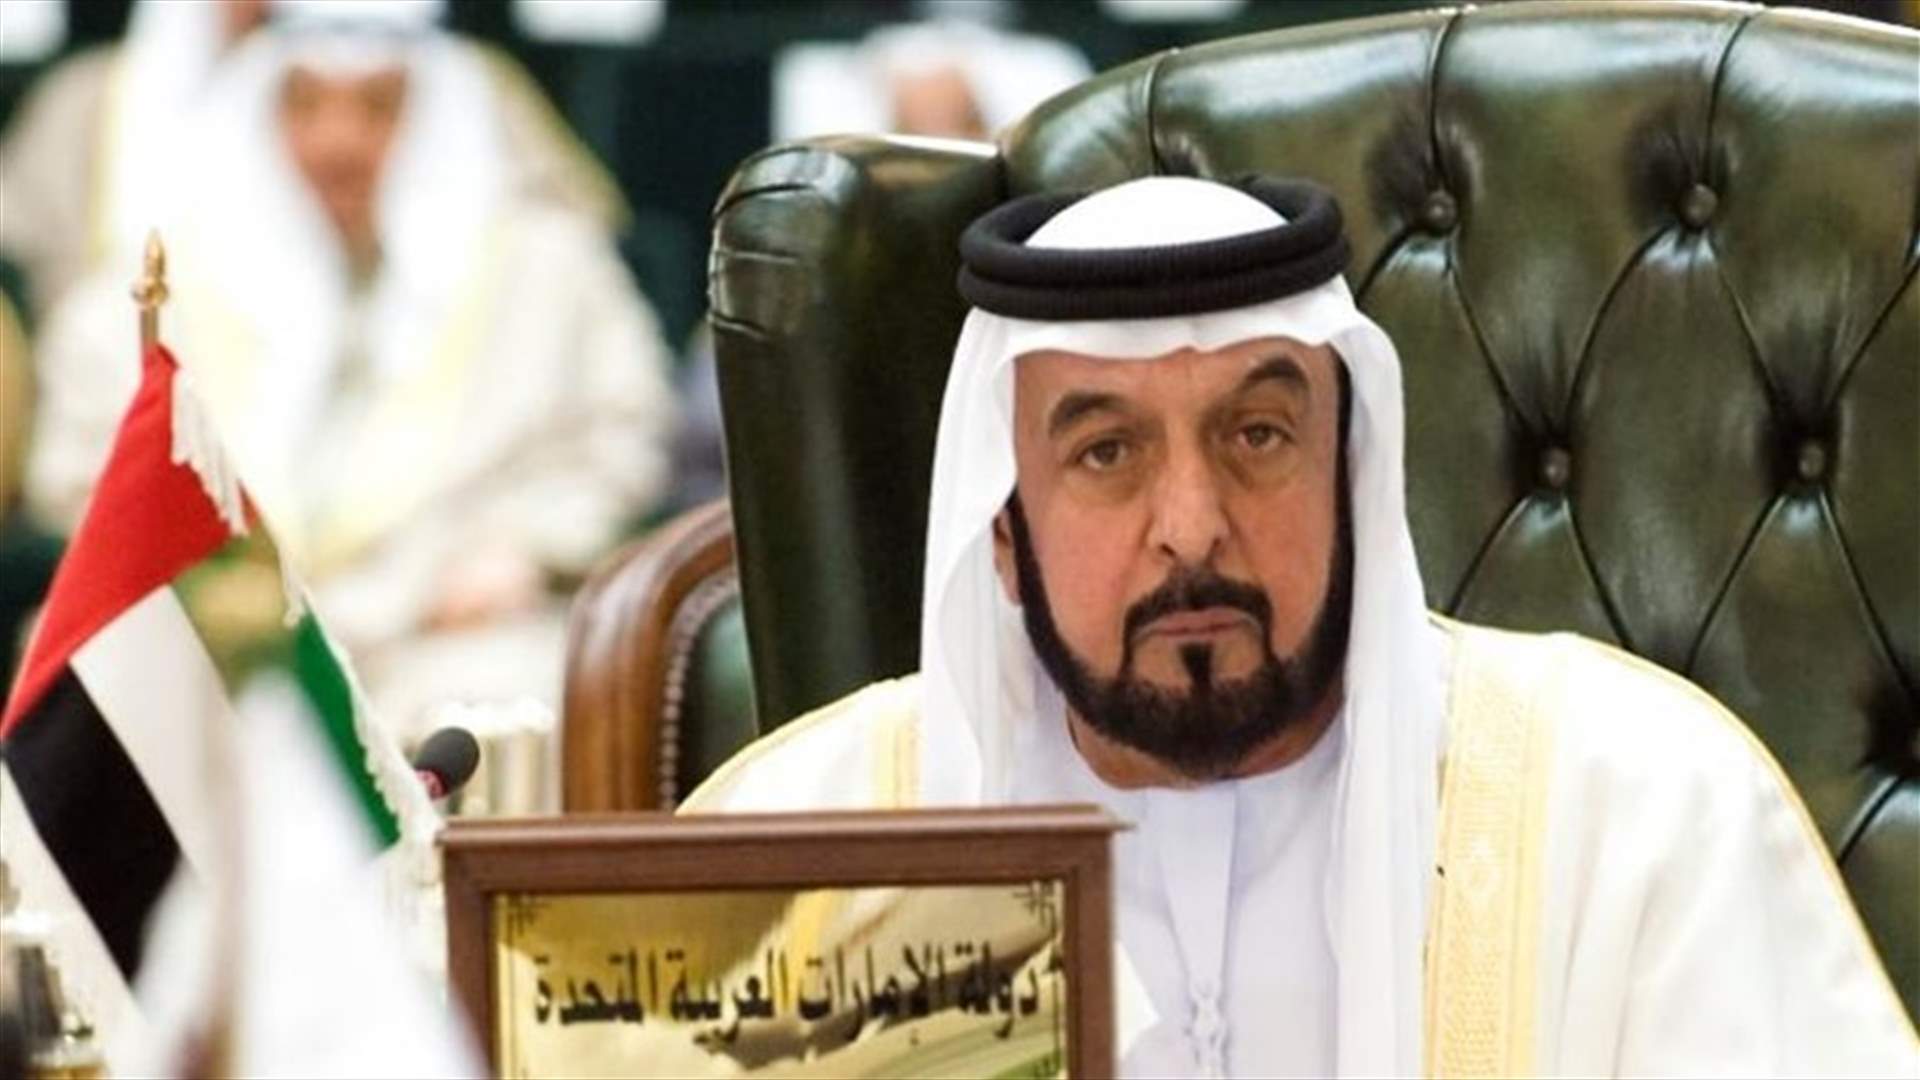 UAE leader returns after rare trip since 2014 stroke